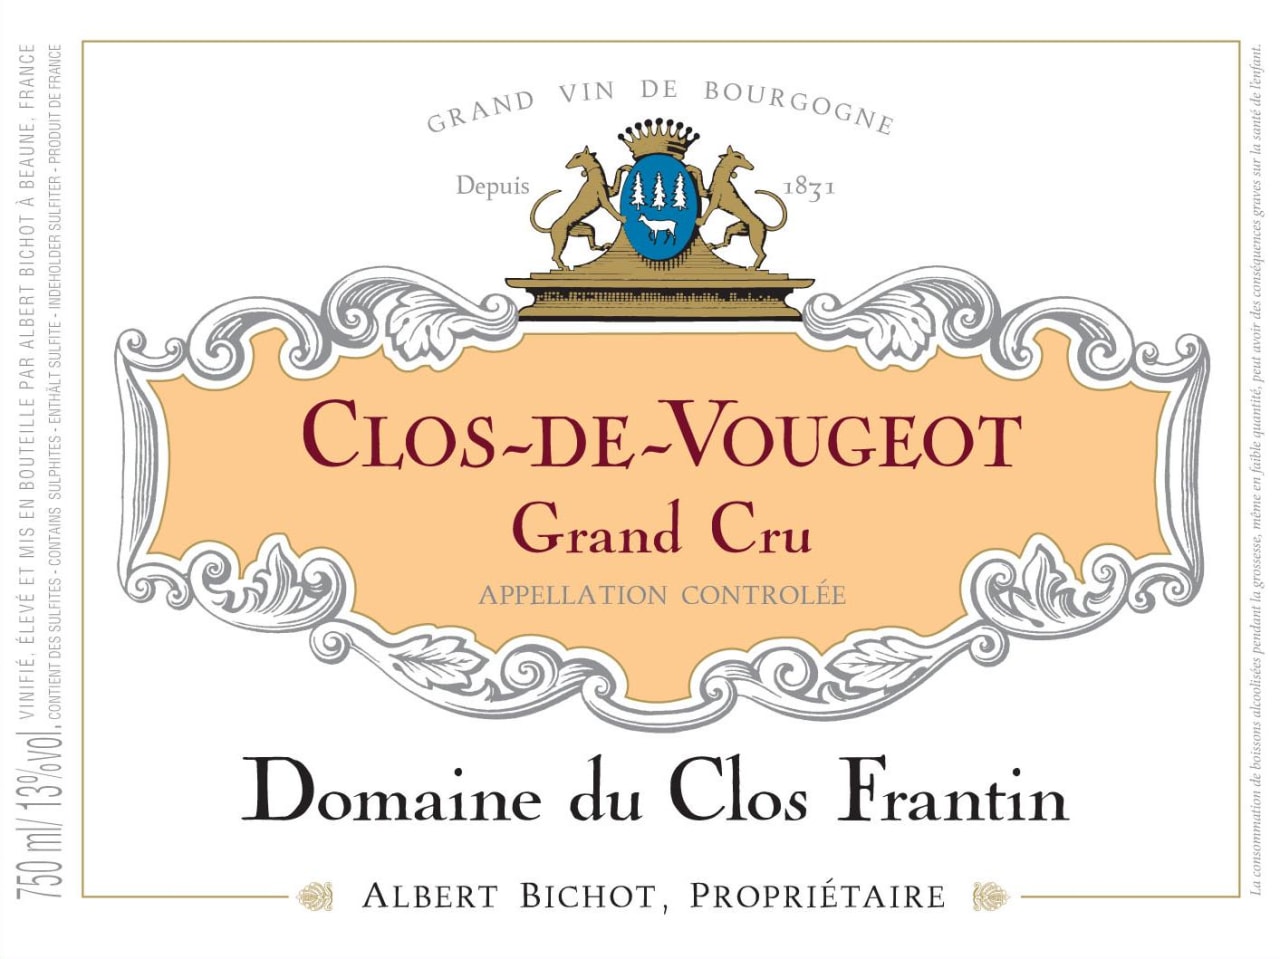 Albert Bichot Domaine du Clos Frantin Clos de Vougeot Grand Cru photo 2